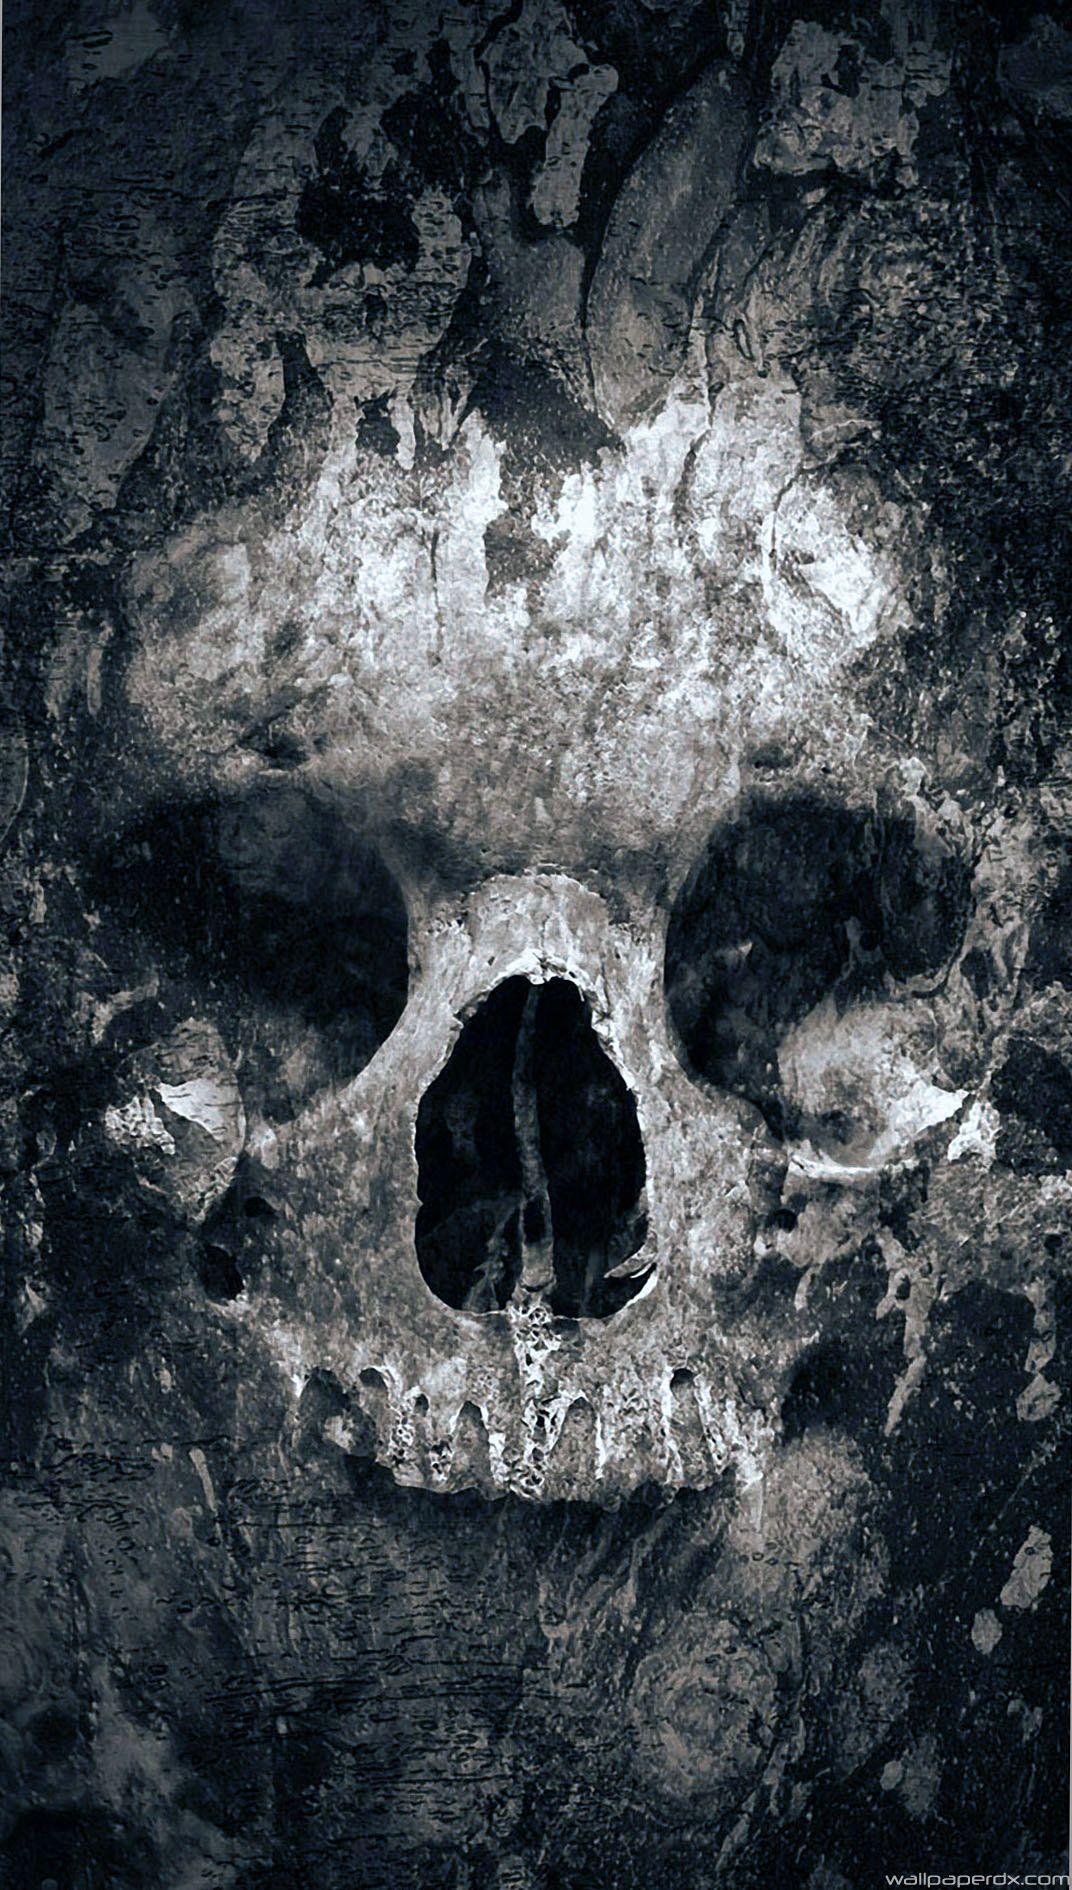 Quake Skull Lockscreen Full HD Android Wallpaper.com